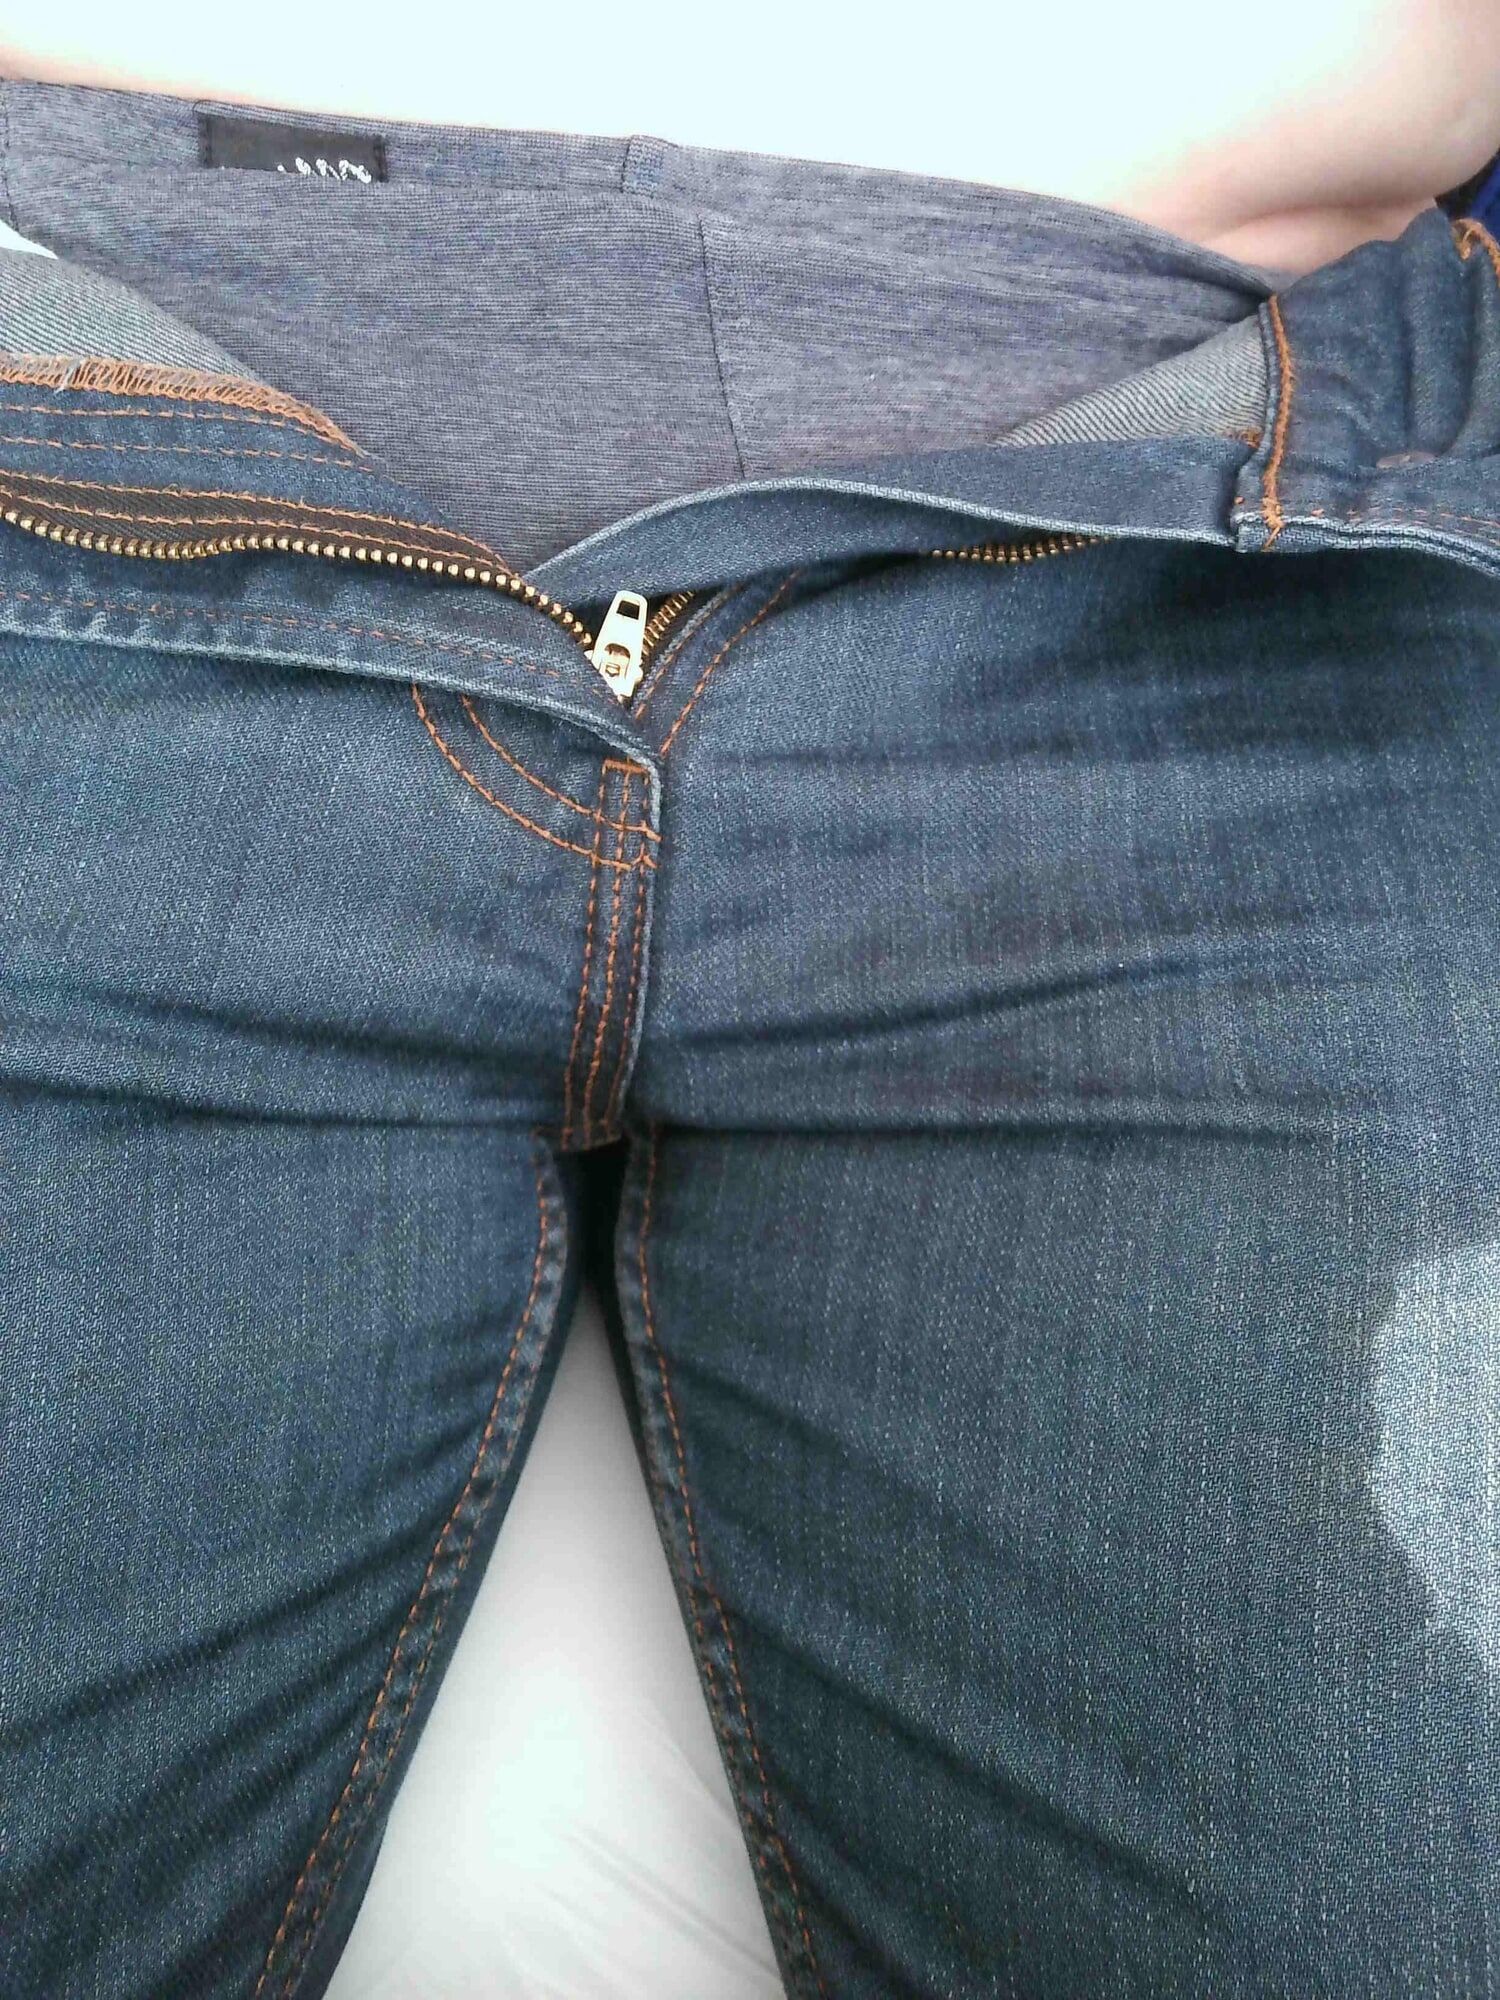 Wet Jeans #8